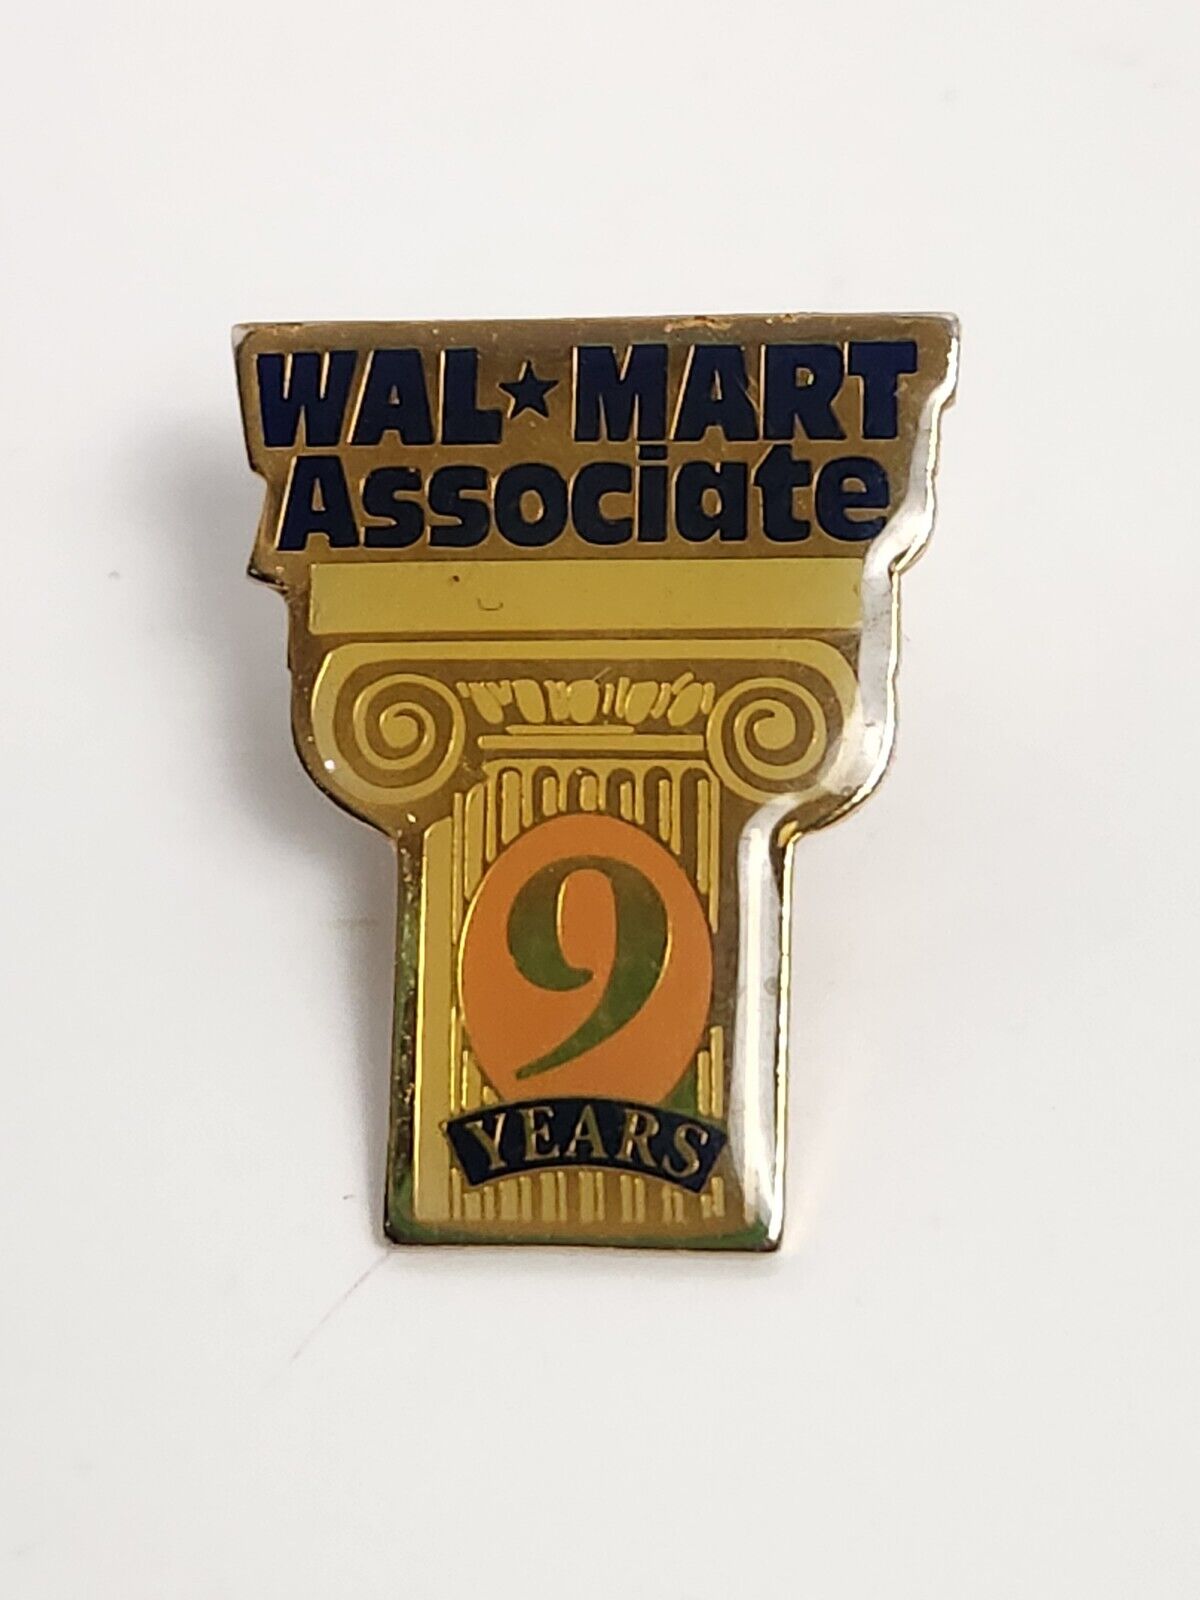 Walmart Hogeye Associate 9 Years Lapel Hat Pin